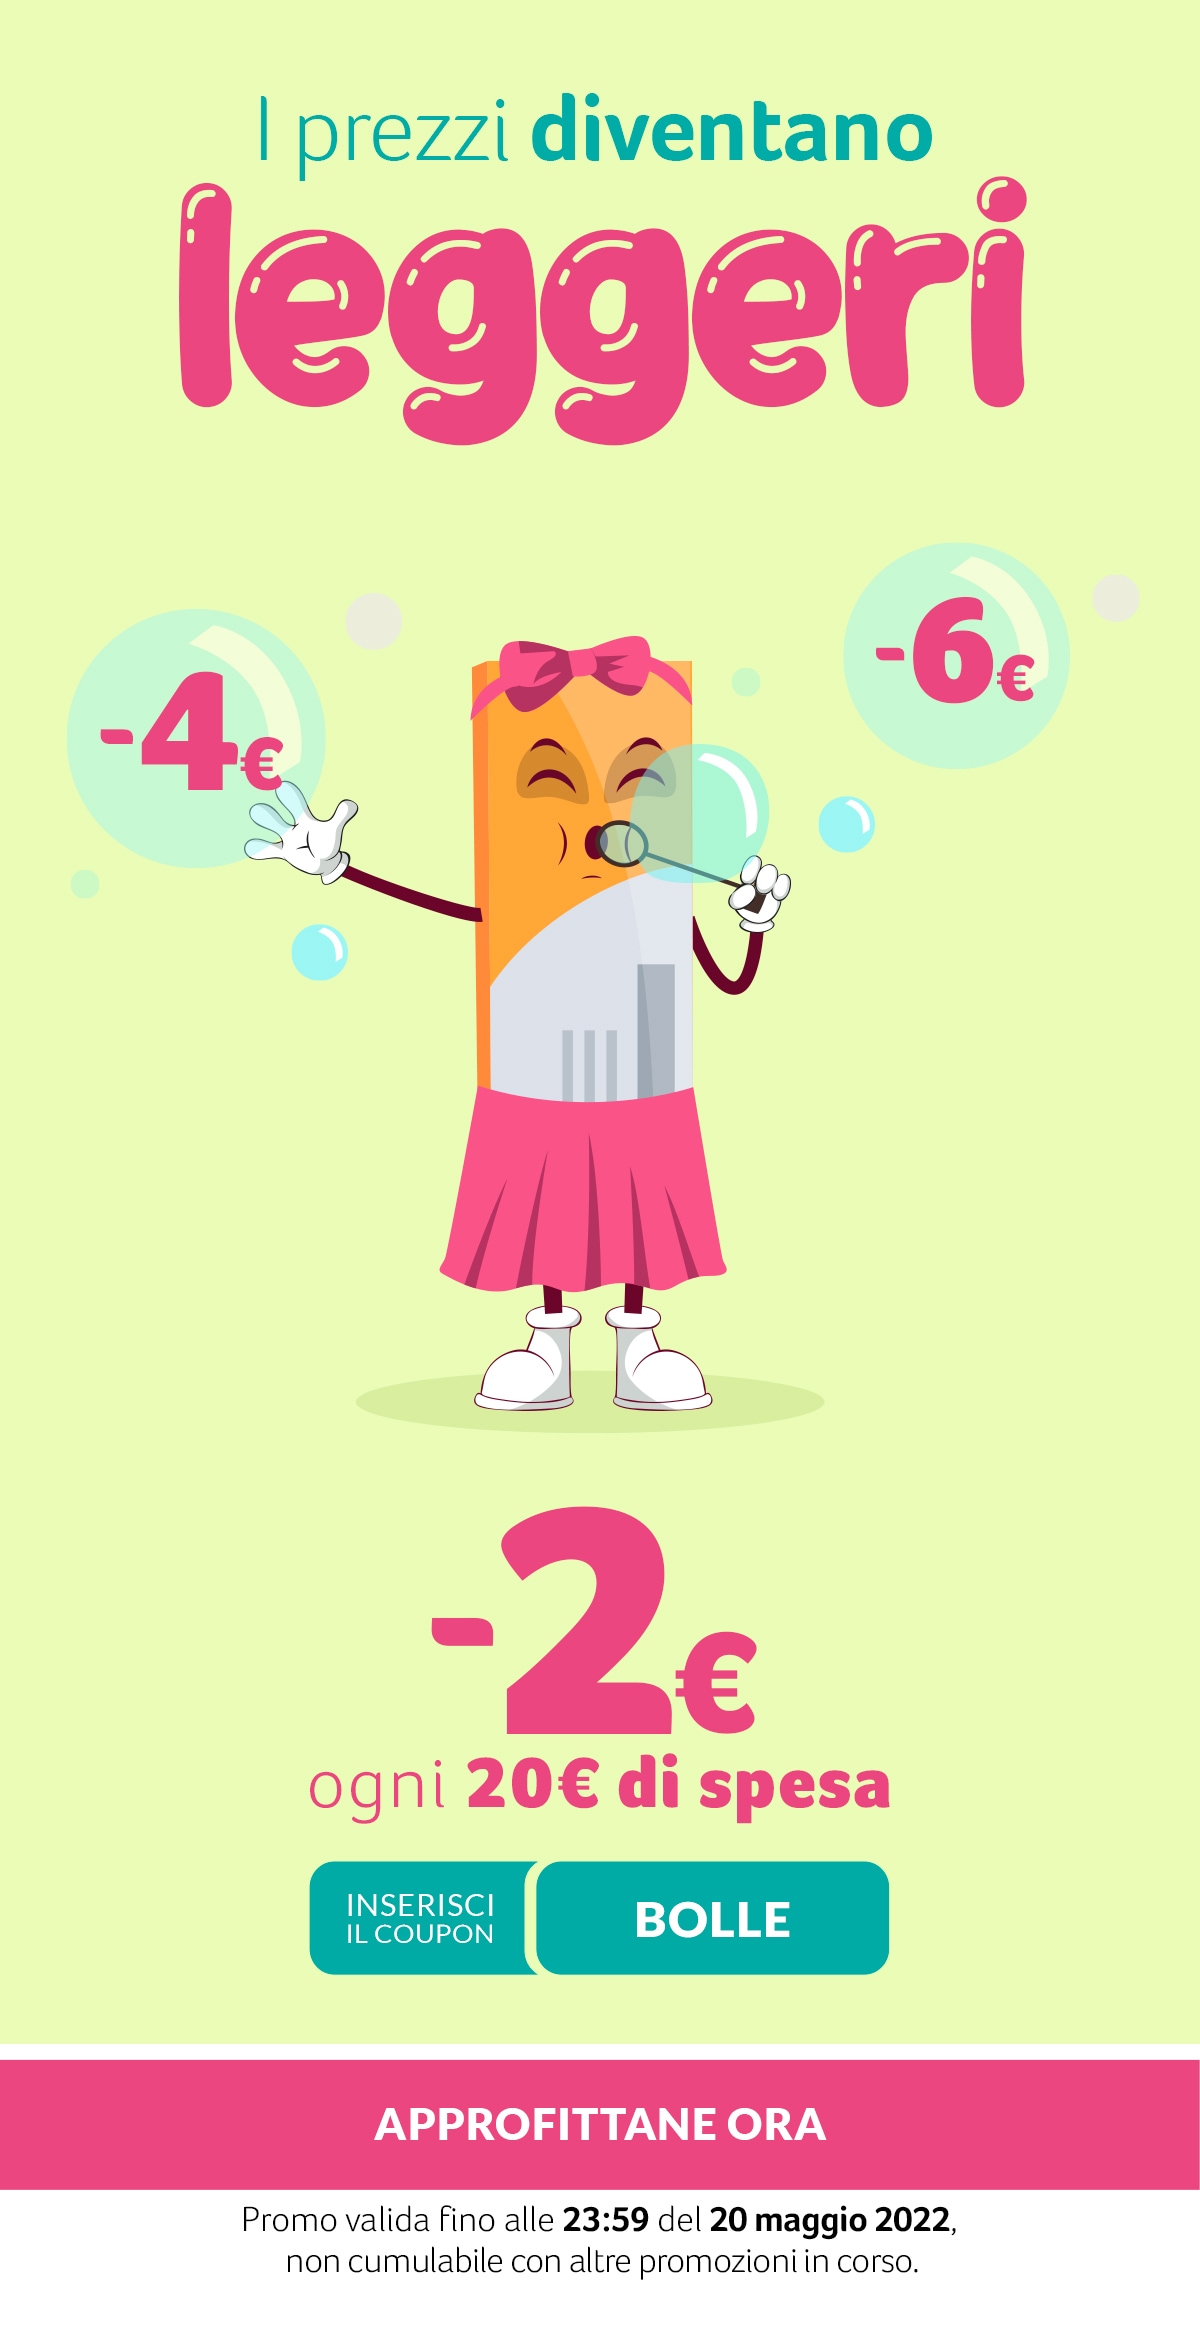 -2€ ogni 20€ di spesa con coupon BOLLE